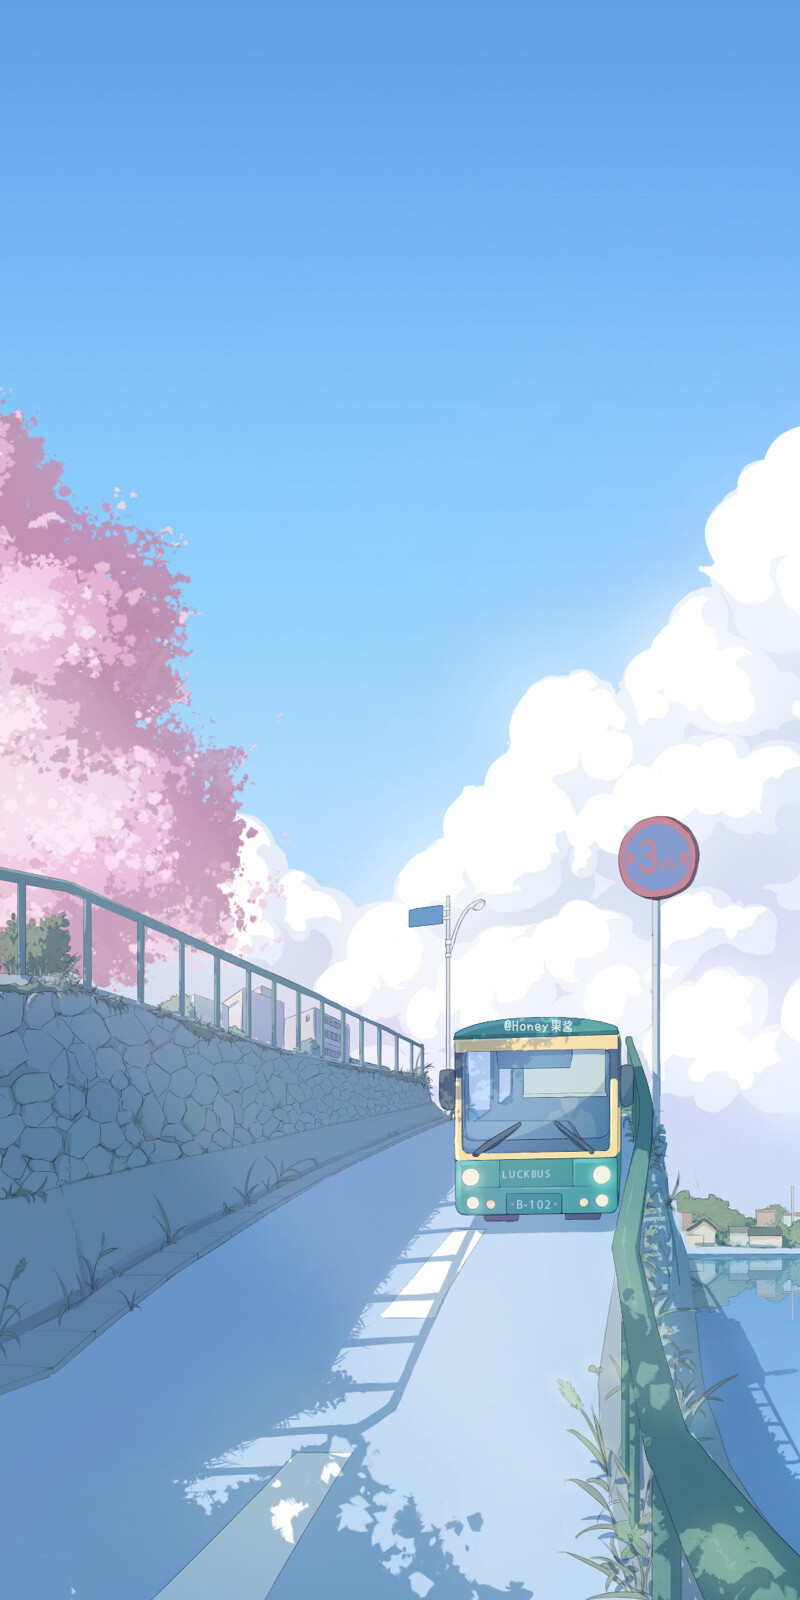 日系动漫风景壁纸 堆糖 美图壁纸兴趣社区